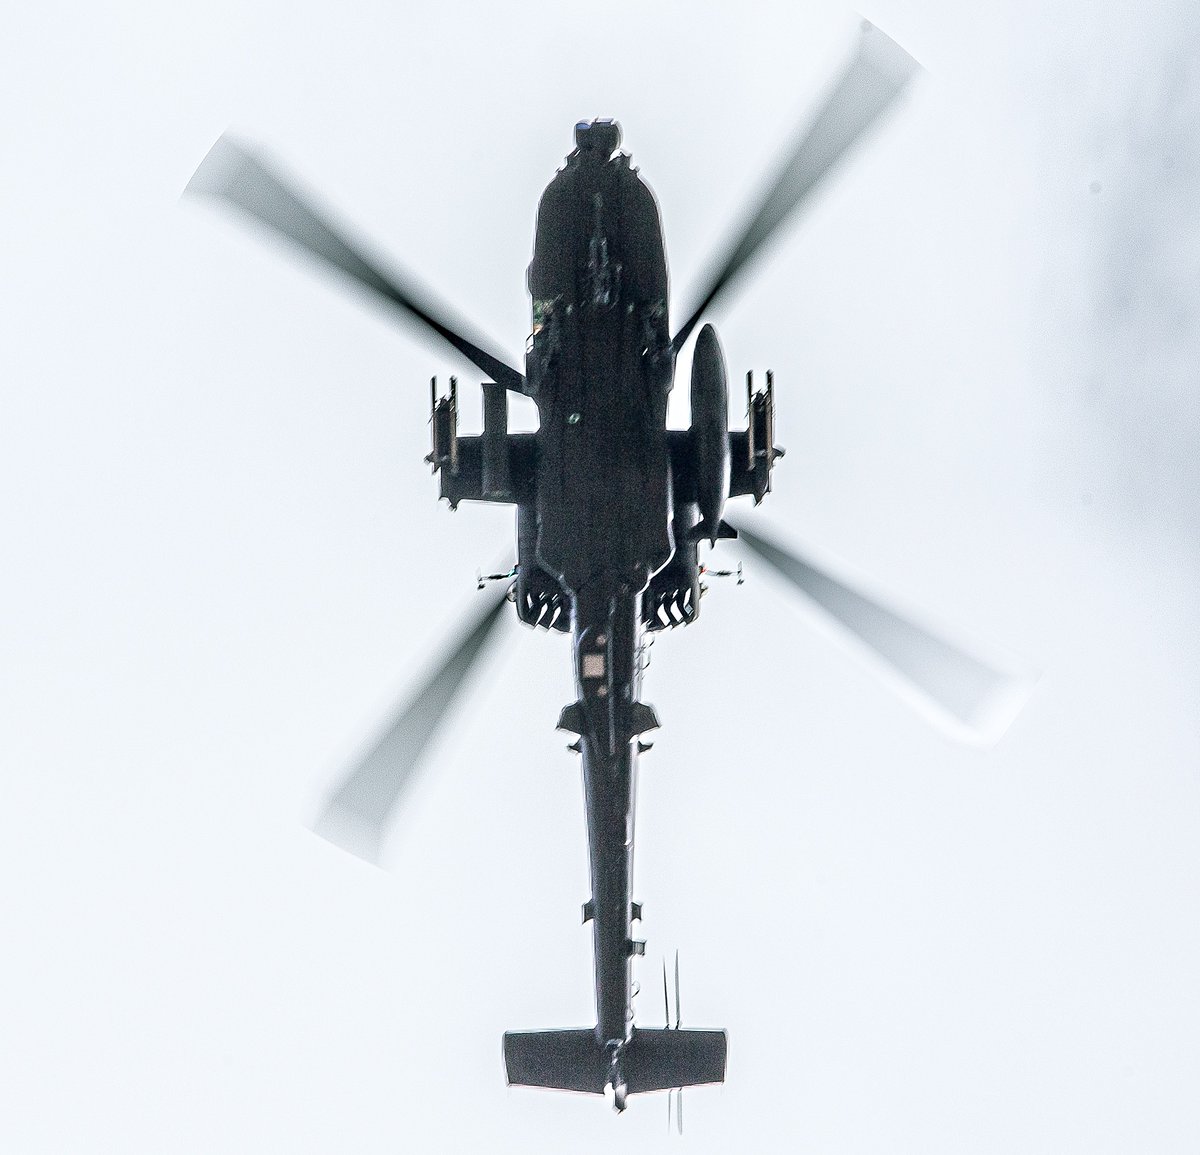 Erilainen kuvakulma!
Tositoimet #Arrow24-harjoituksessa käynnistyvät maanantaina. Uuden elementin toimintaan tuovat @BritishArmy AH-64E Apache -taisteluhekot.
Tämä yksilö lensi Niinisalossa varustettuna rakettikasetilla ja lisäsäiliöllä.
Kuva: #Panssariprikaati
#turpo #avgeek